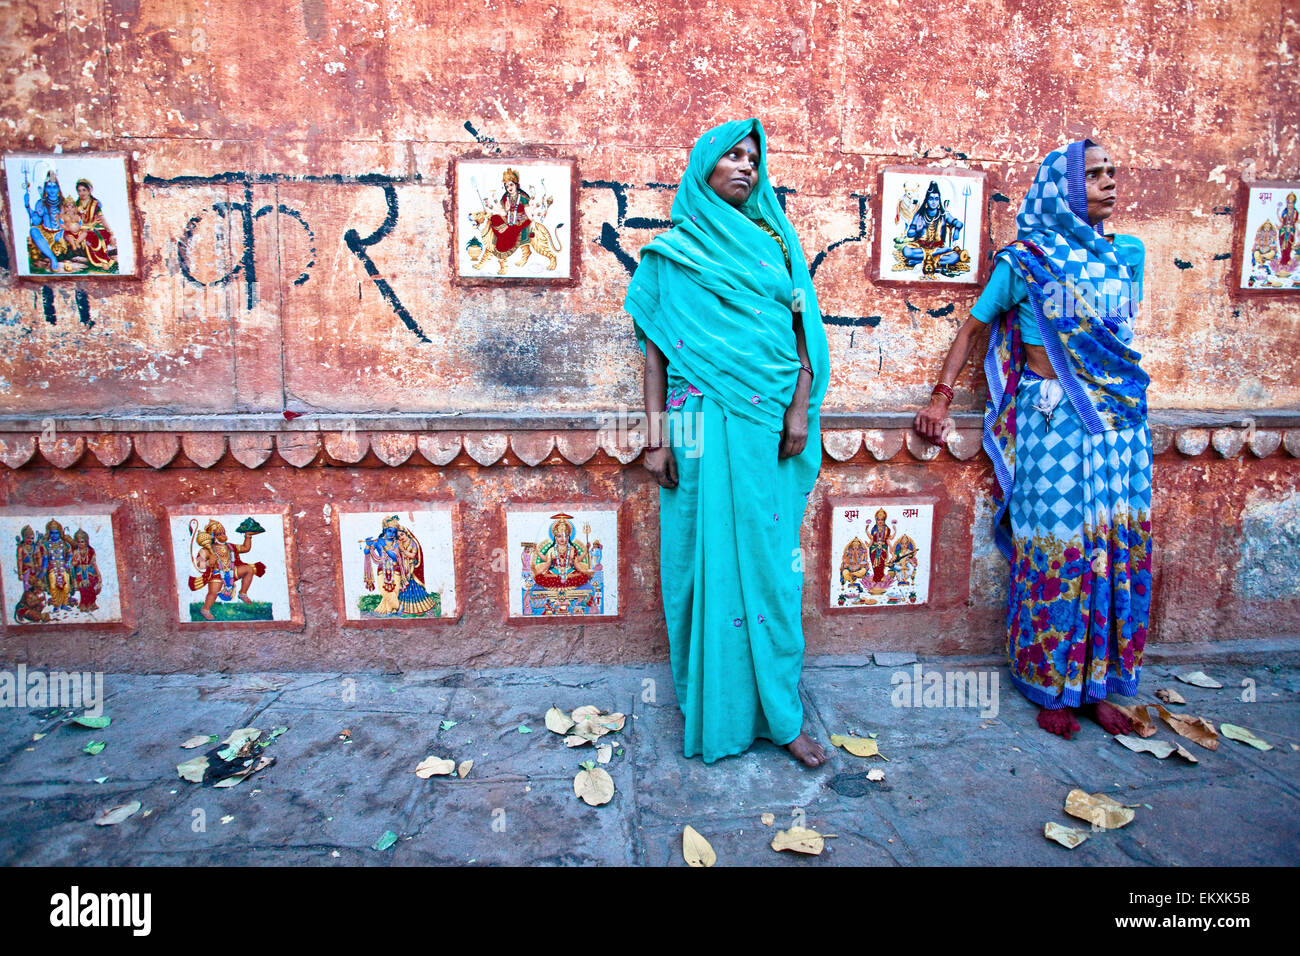 Deux femmes en saris debout dans la rue contre un mur bordé d'images de dieux hindous ; Varanasi Inde Banque D'Images